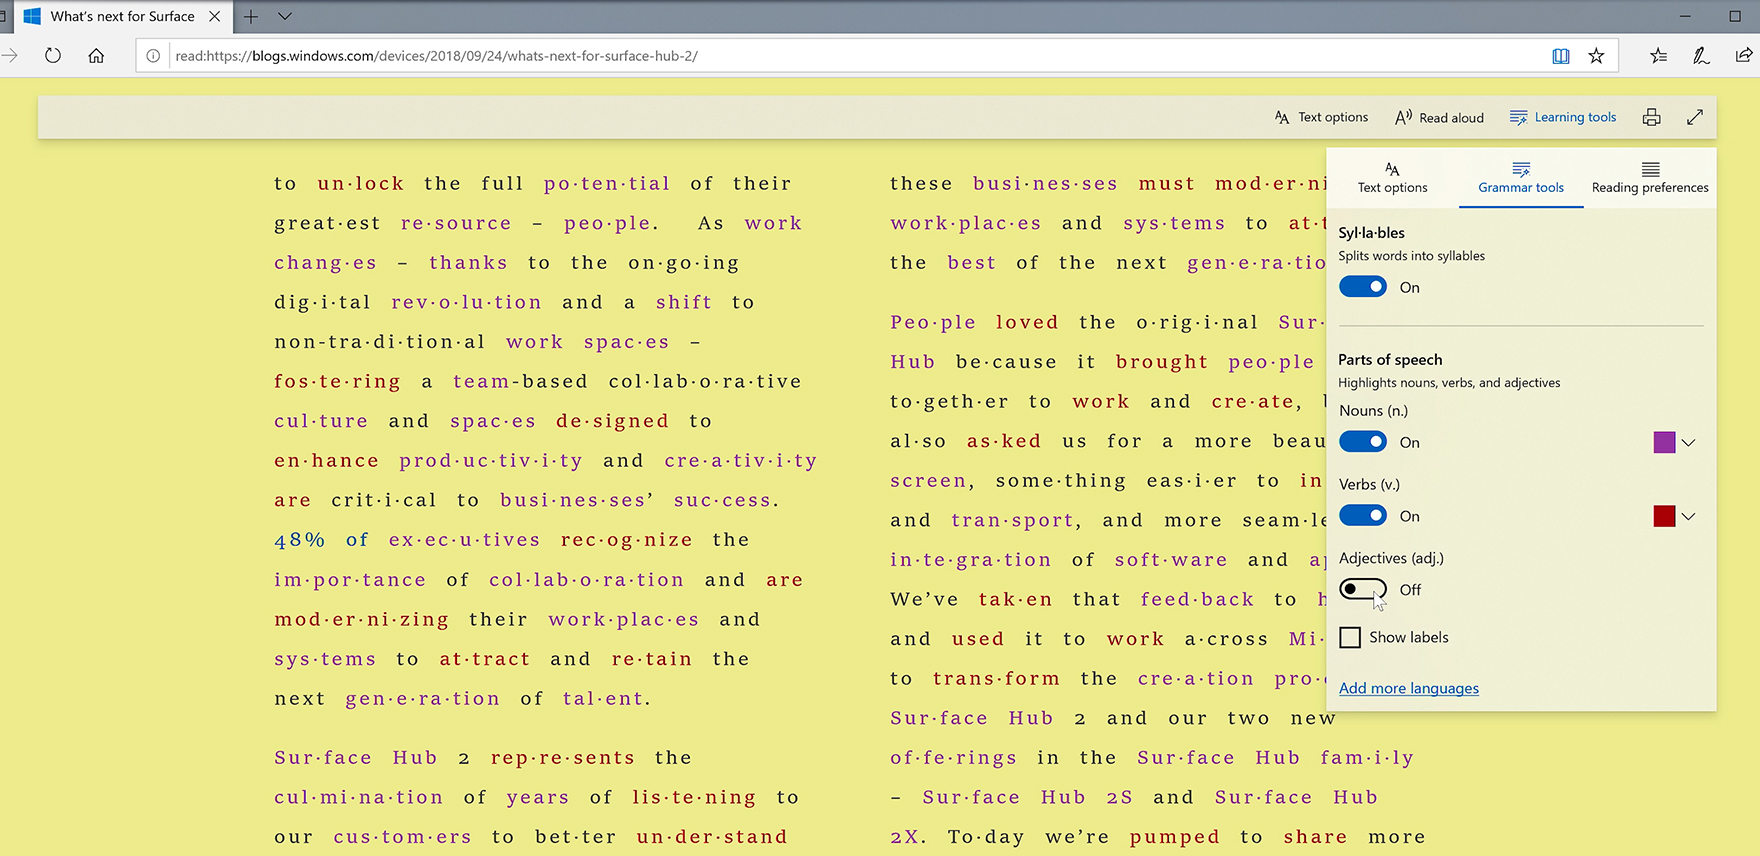 Screenshot of grammar tools